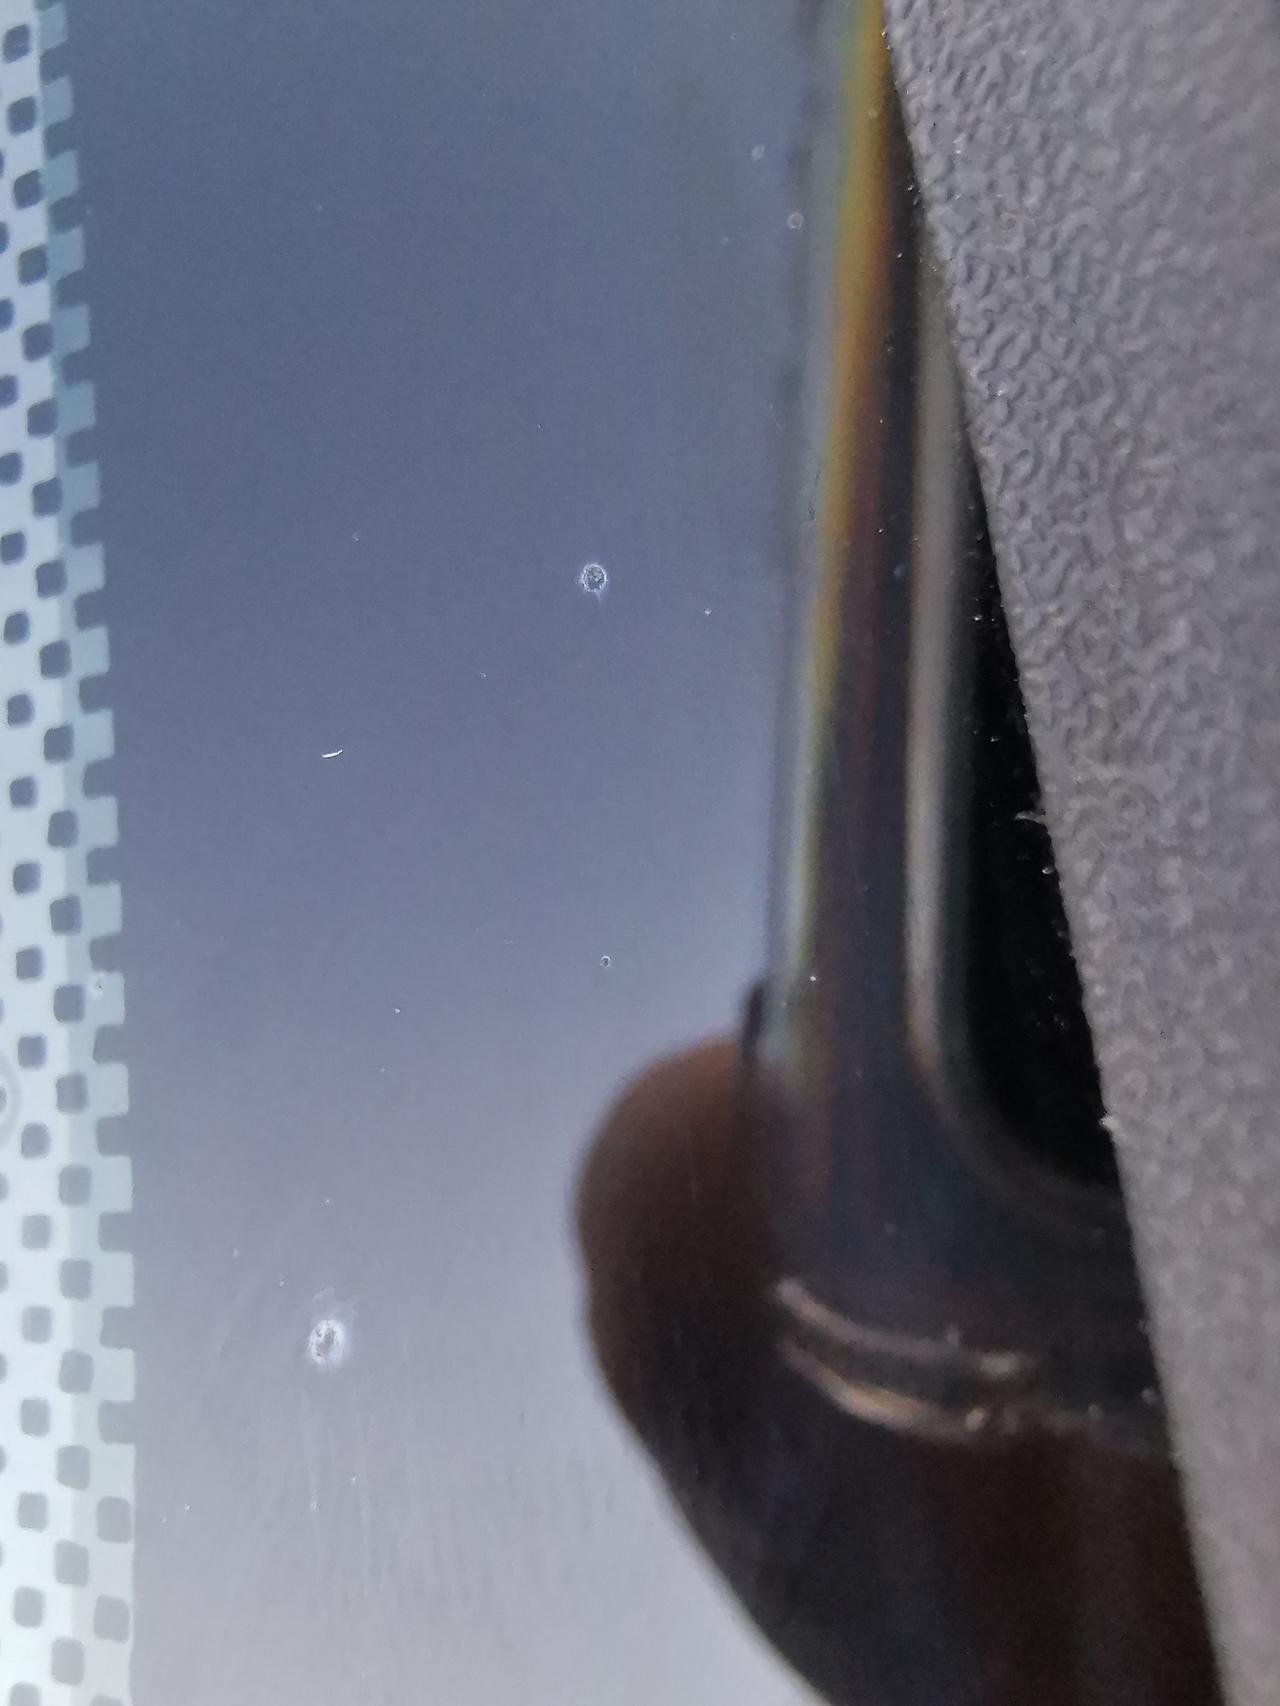 长安CS75 PLUS 新车，前挡风玻璃和天窗上布满了很多小白点，用手机微距模式拍了几张照片如下，有人说是铁粉，有人说是